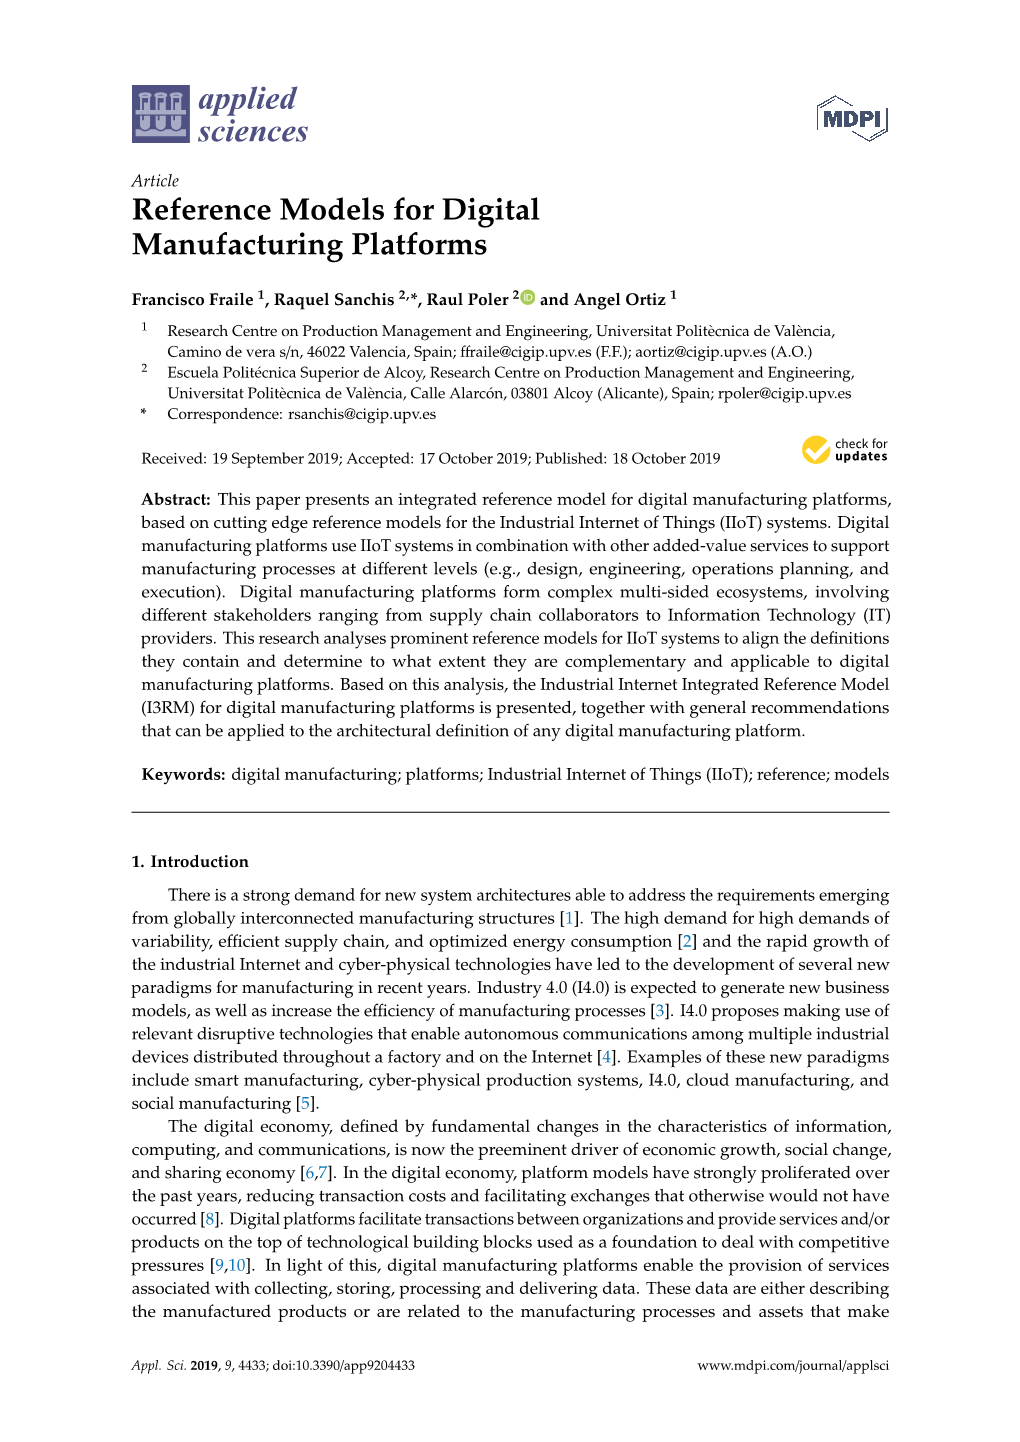 Reference Models for Digital Manufacturing Platforms